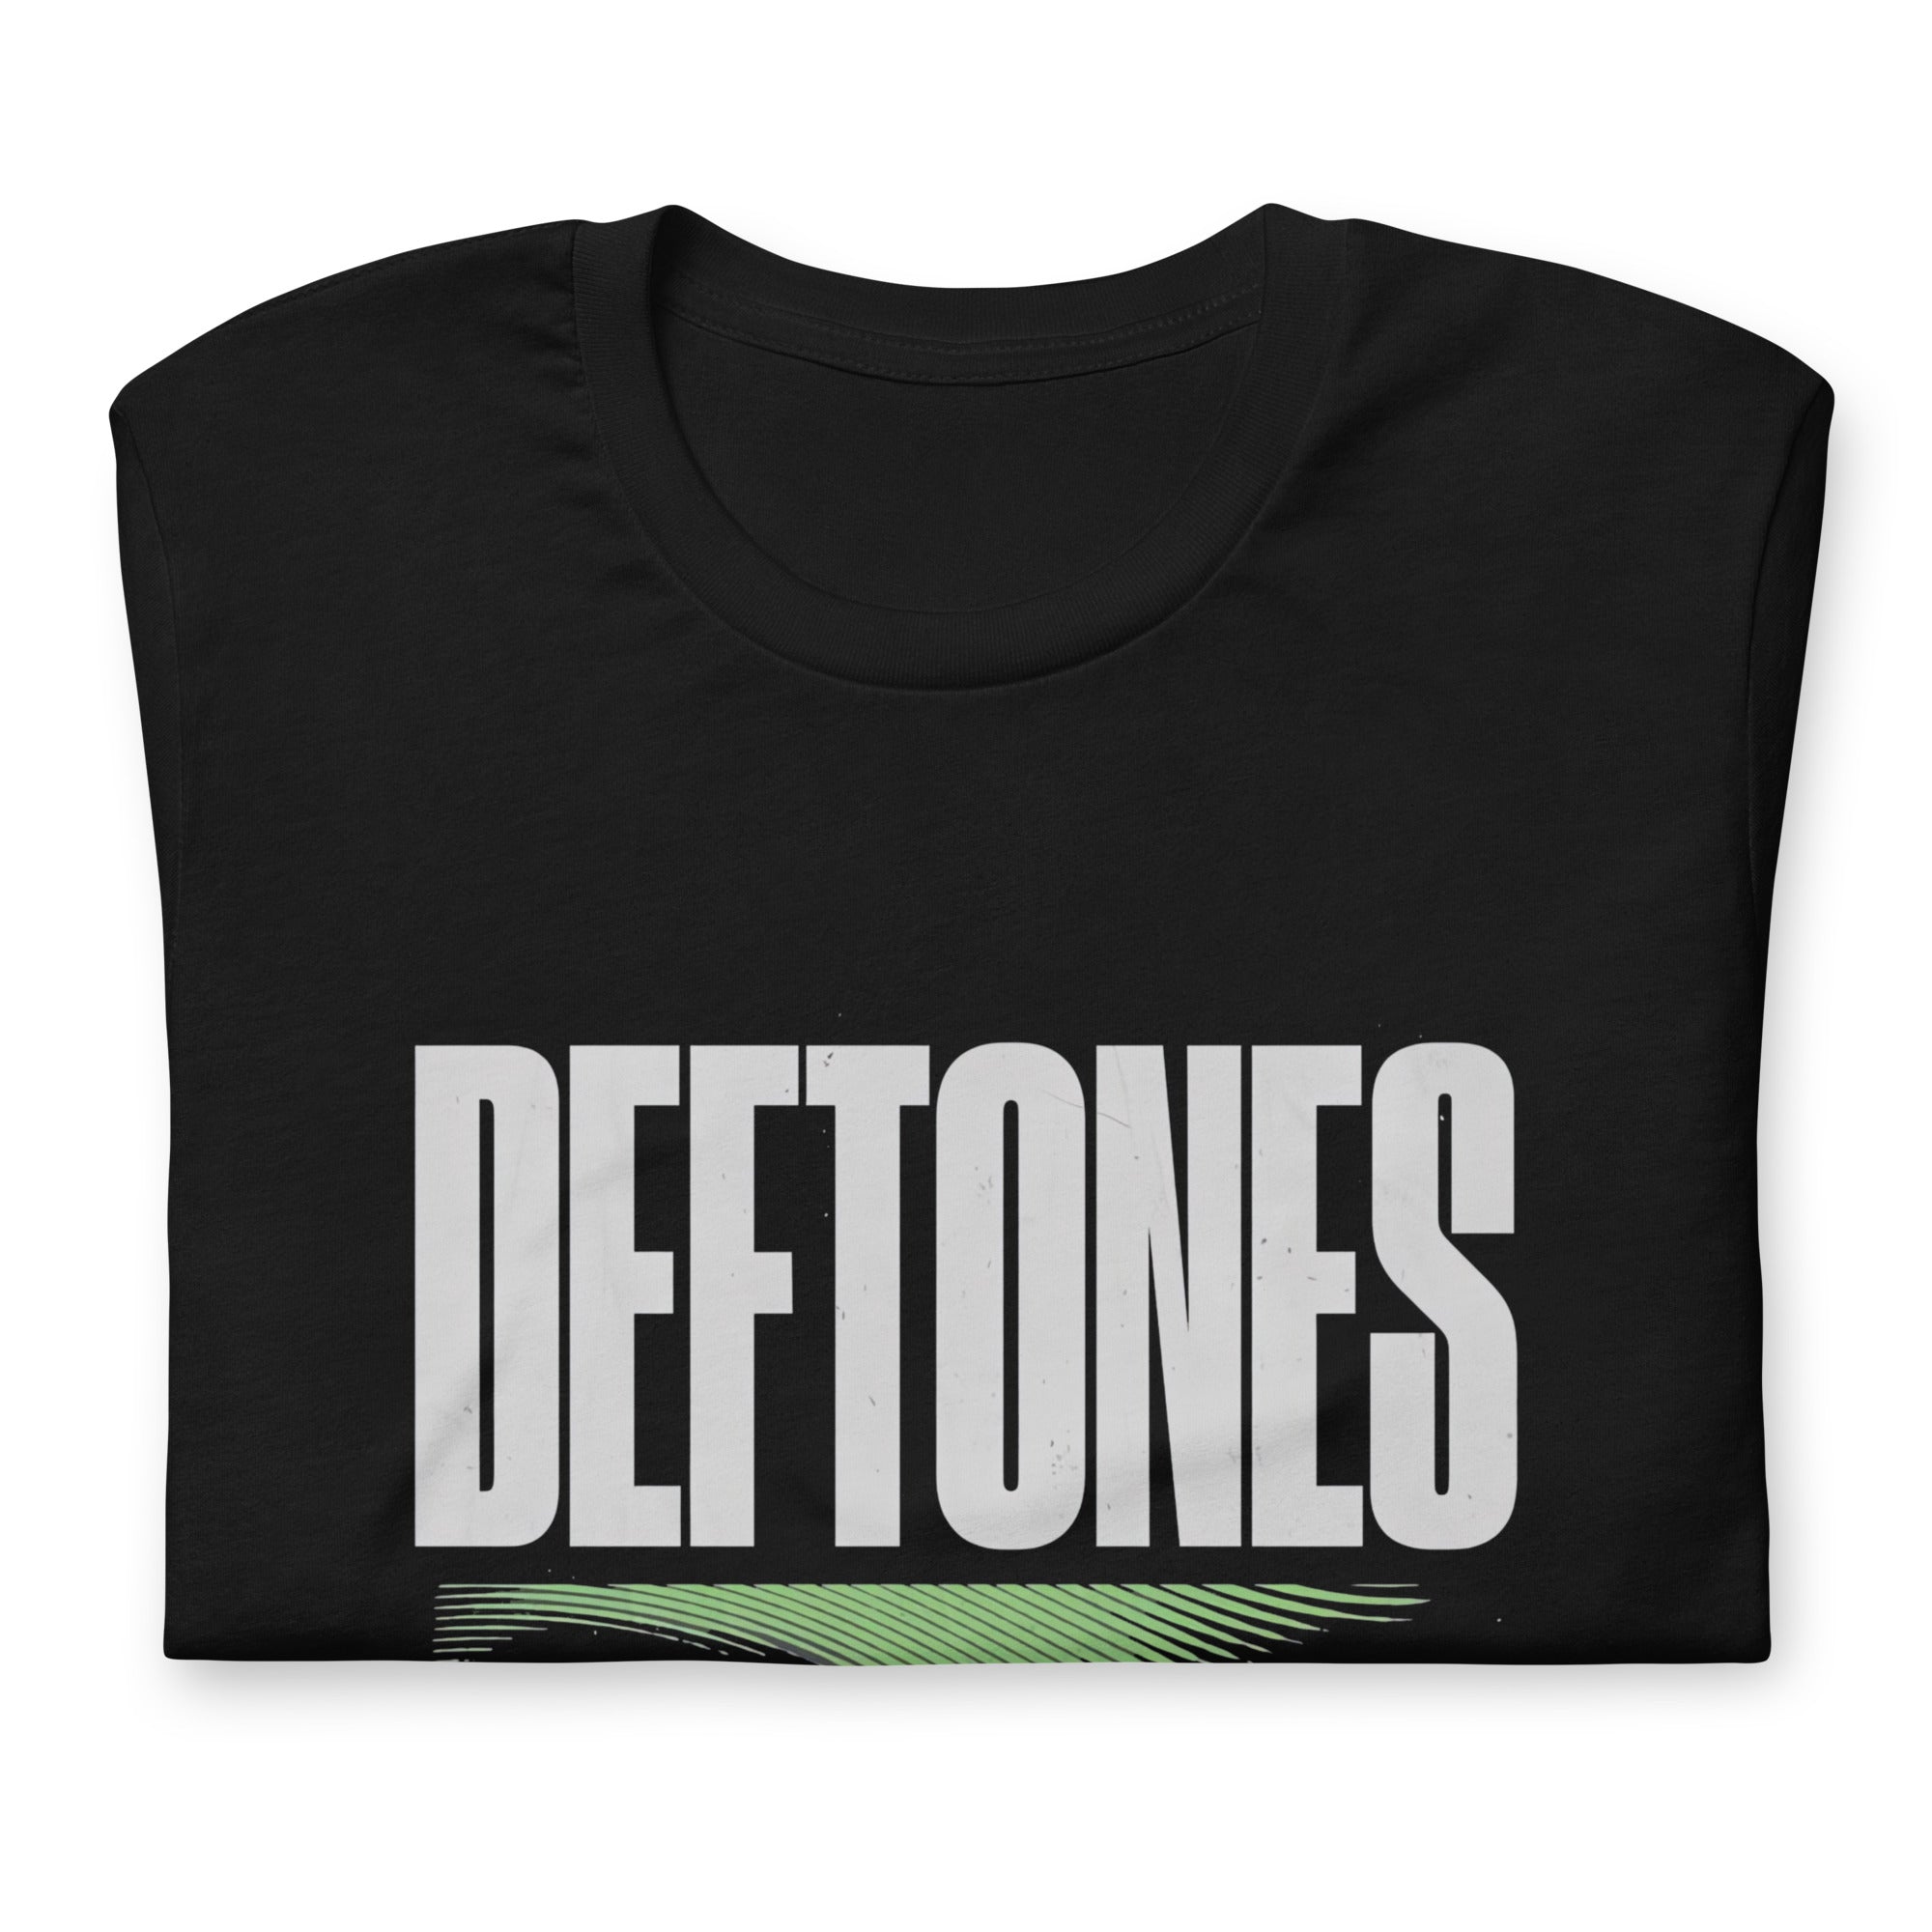 ¡Compra el mejor merchandising en Superstar! Encuentra diseños únicos y de alta calidad en playeras, Camiseta Deftones - Ceremony